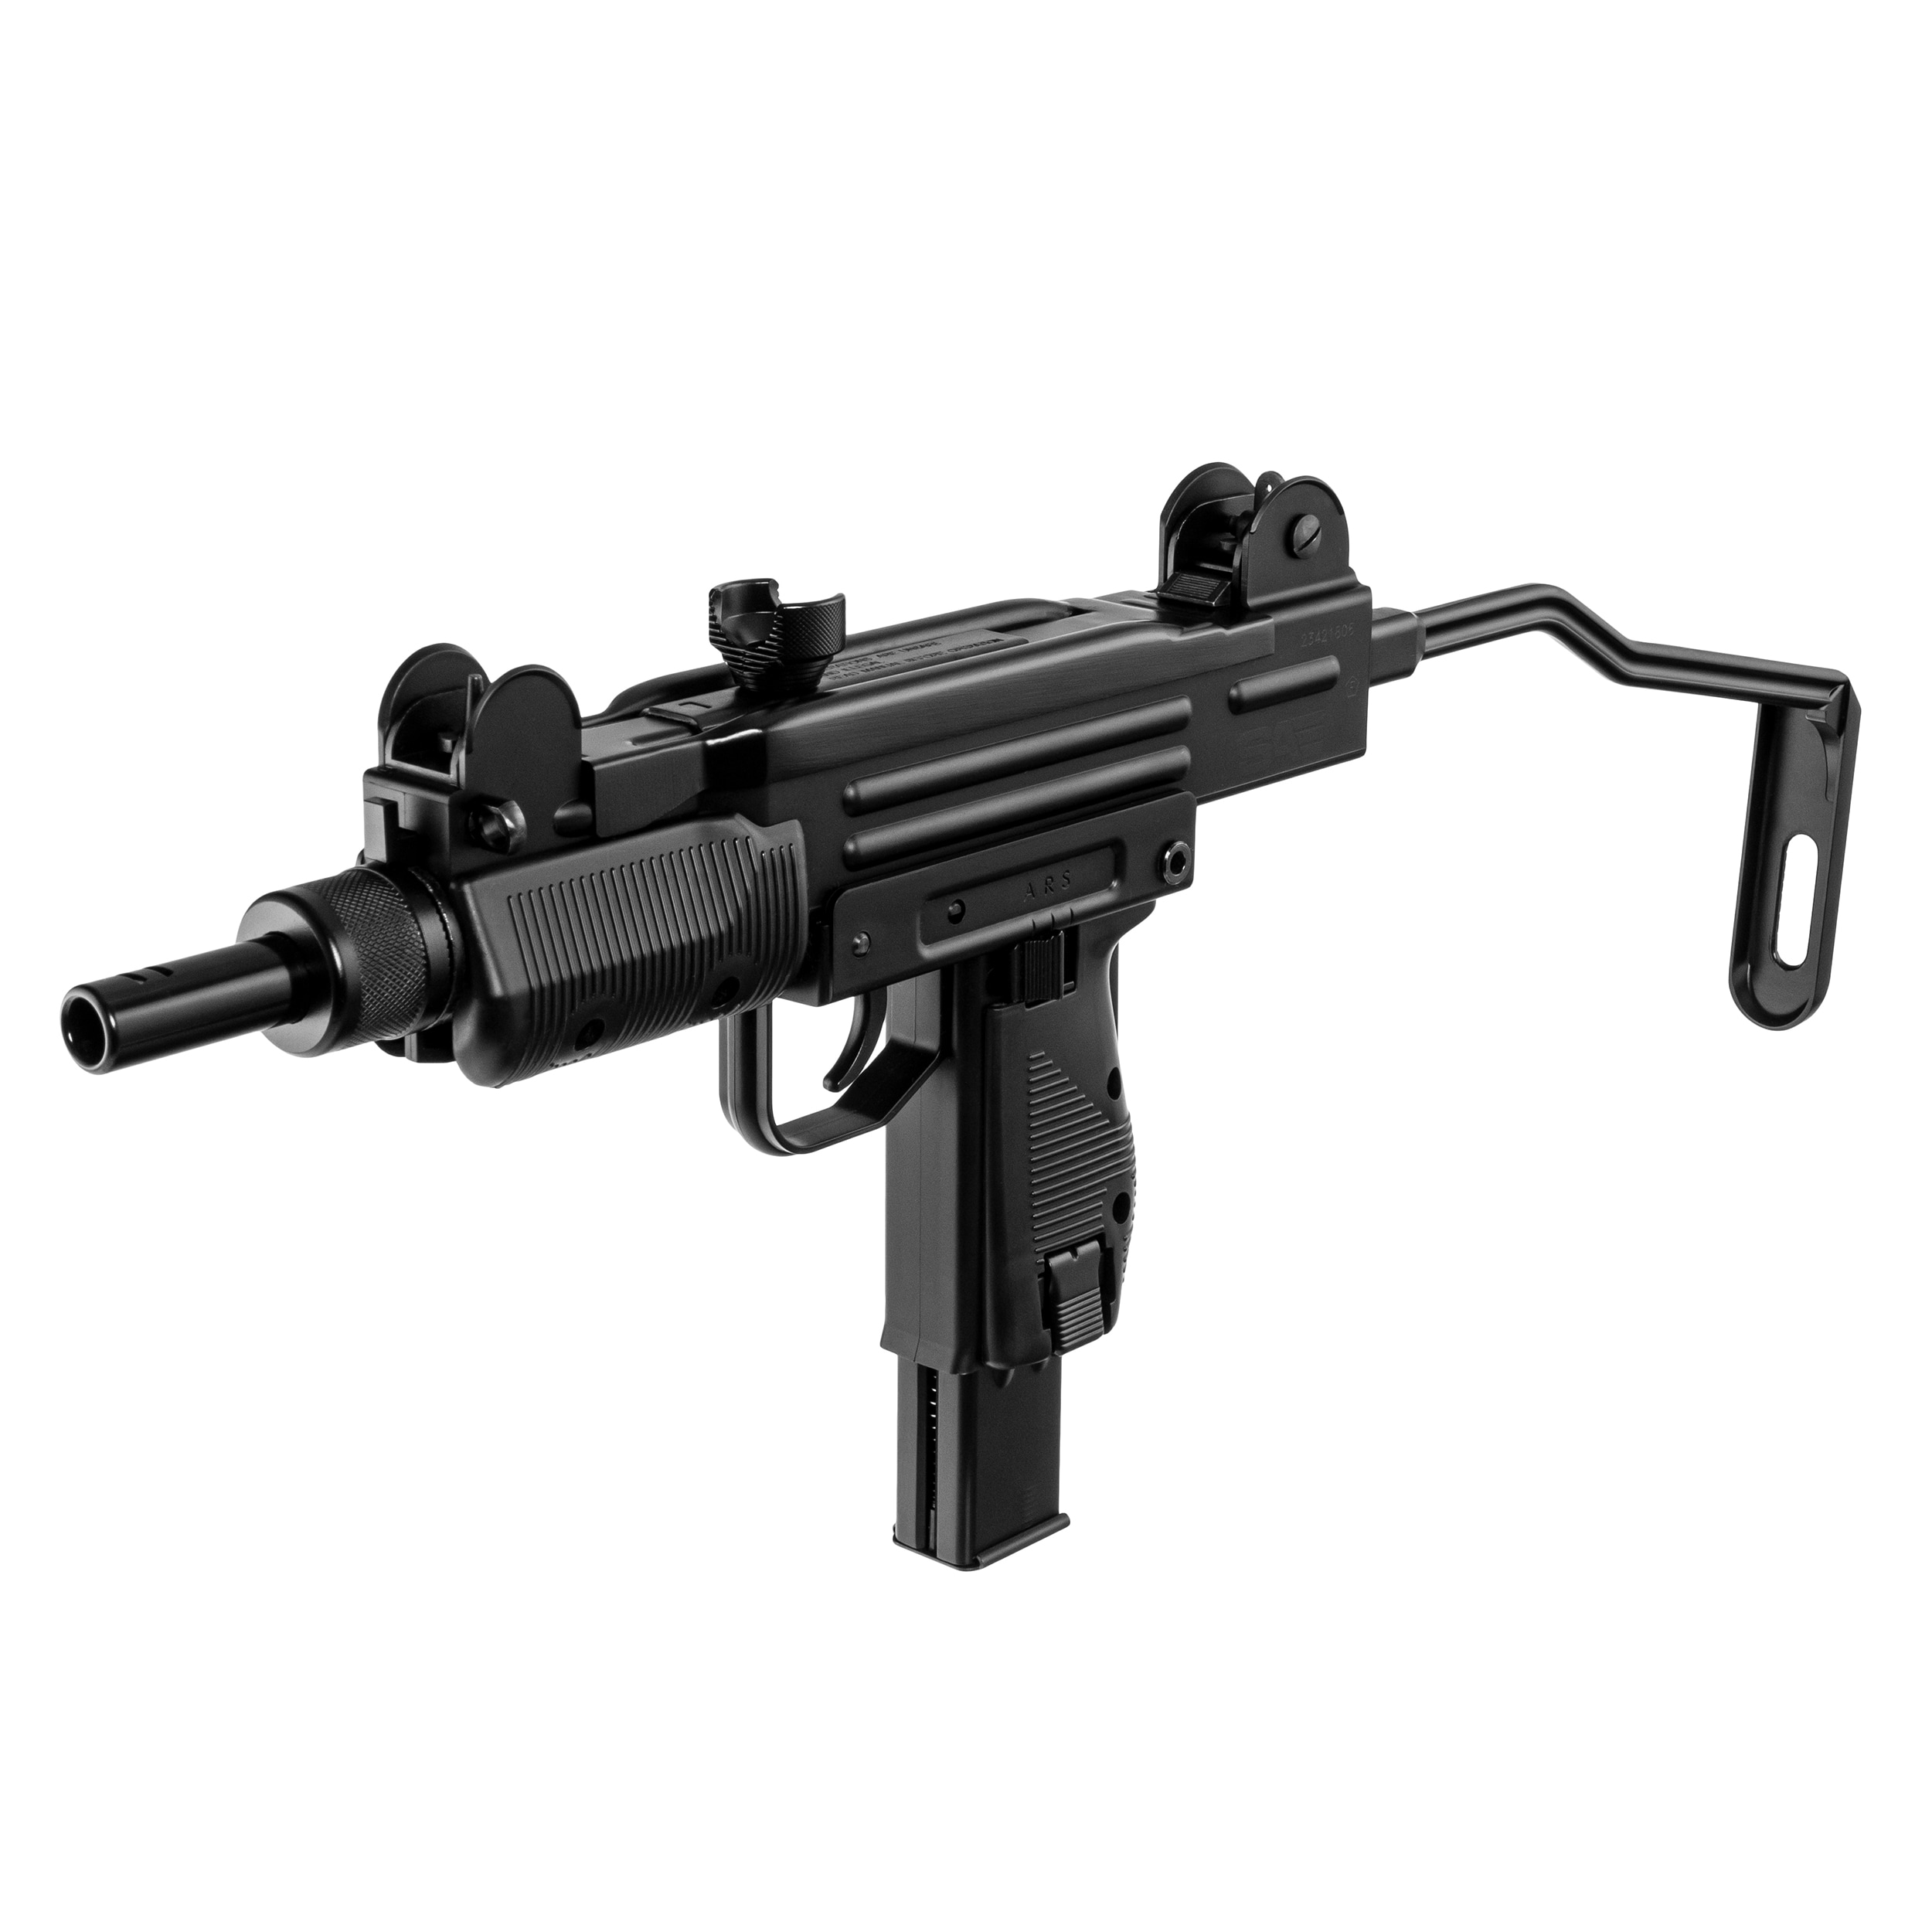 Wiatrówka GBB Cybergun Swiss Arms Protector Mini Uzi Full Auto 4,5 mm